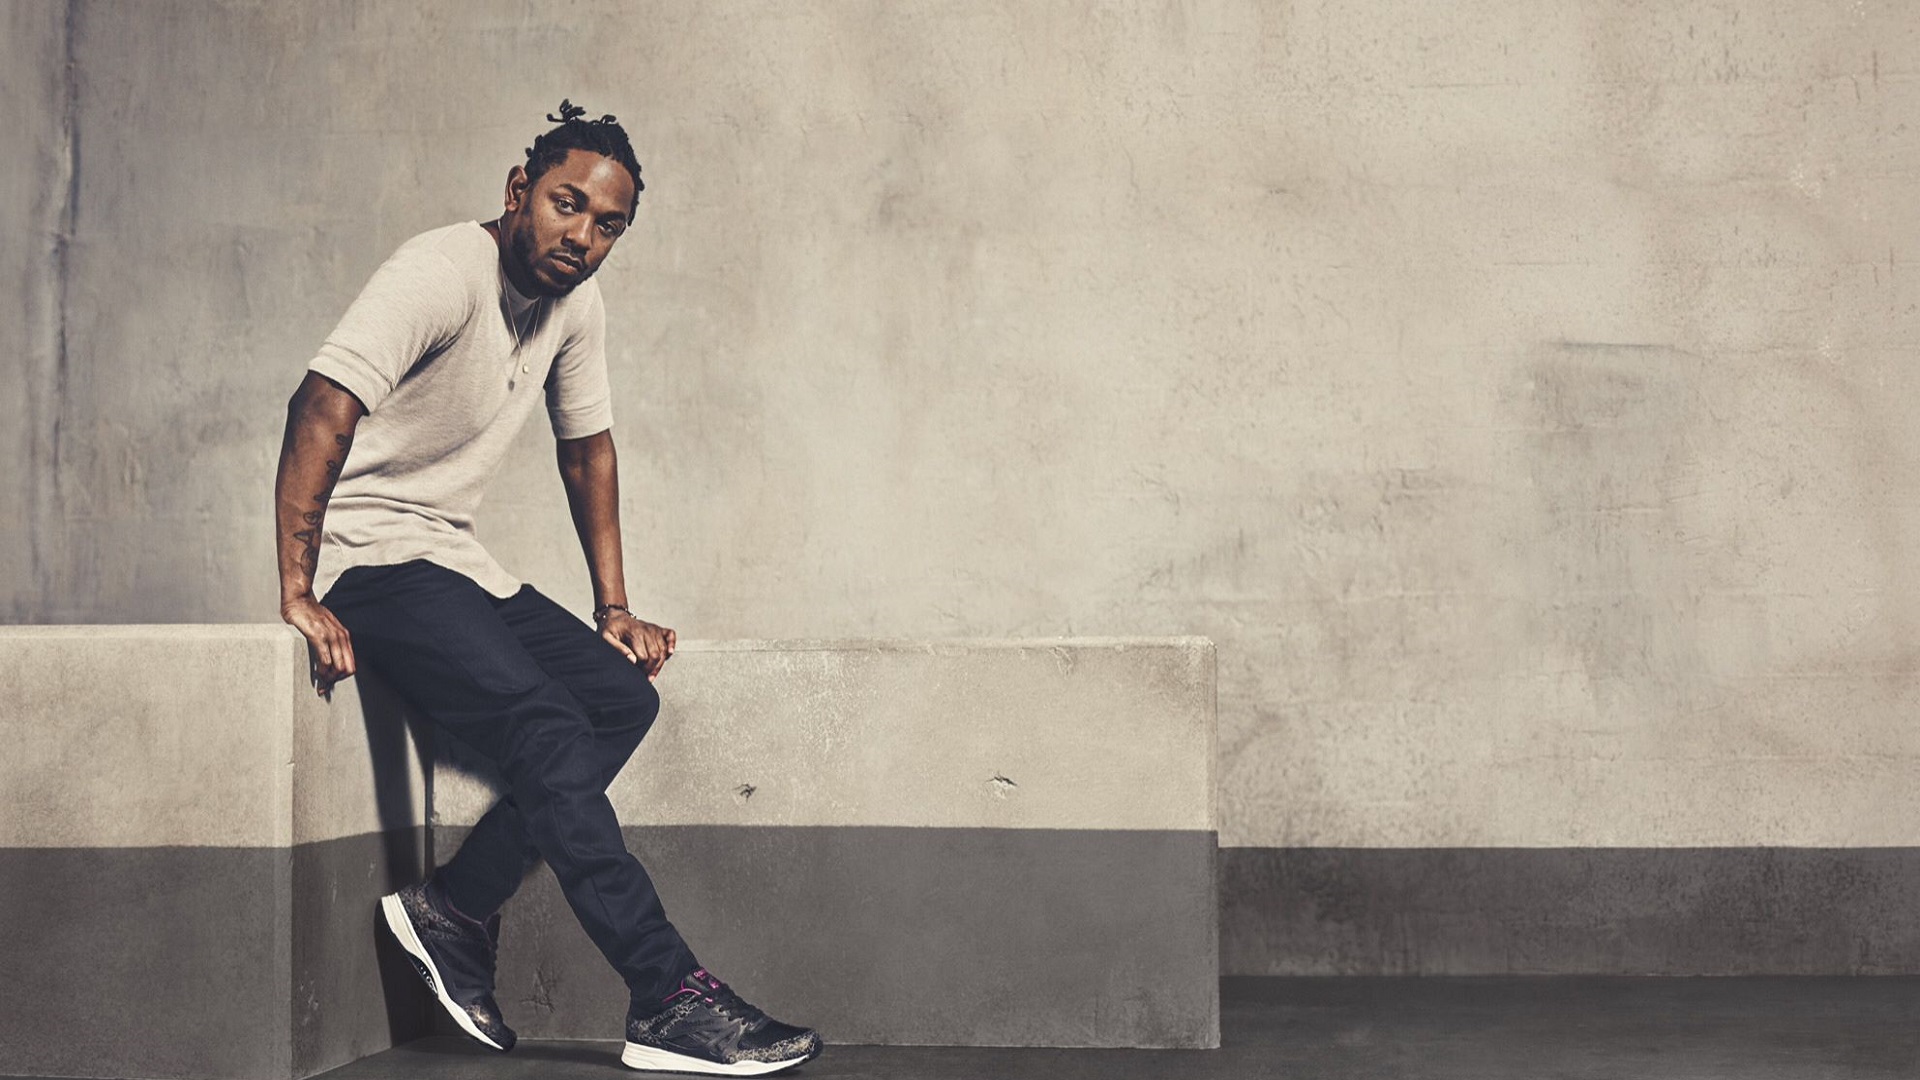 “No puedo hacer lo mismo una y otra vez”, Kendrick Lamar sobre su proceso creativo